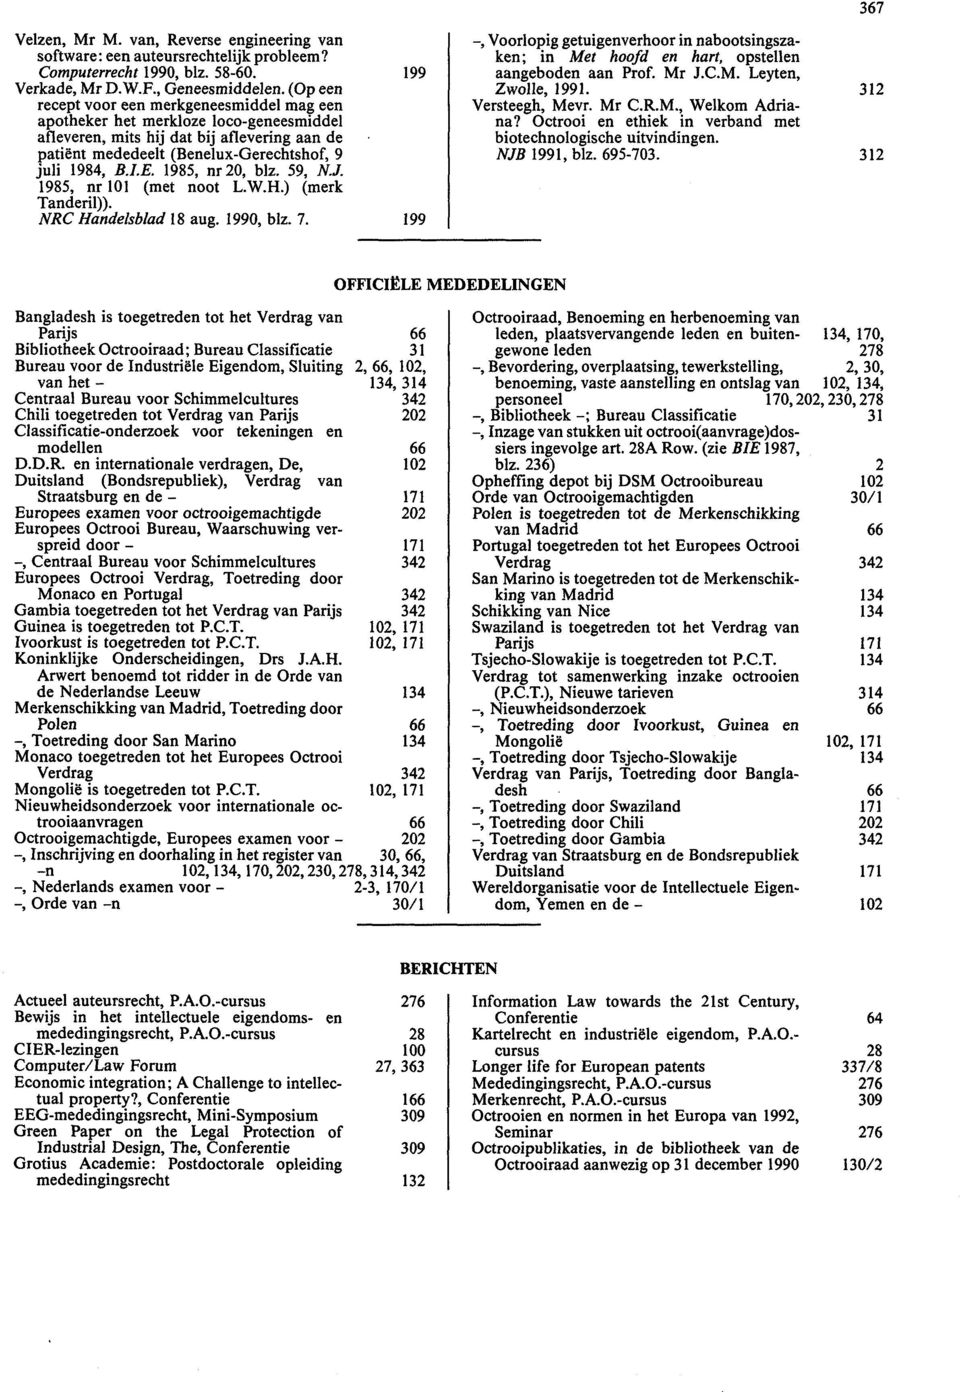 1985, nr20, blz. 59, N.J. 1985, nr 101 (met noot L.W.H.) (merk Tanderil)). NRC Handelsblad 18 aug. 1990, blz. 7.